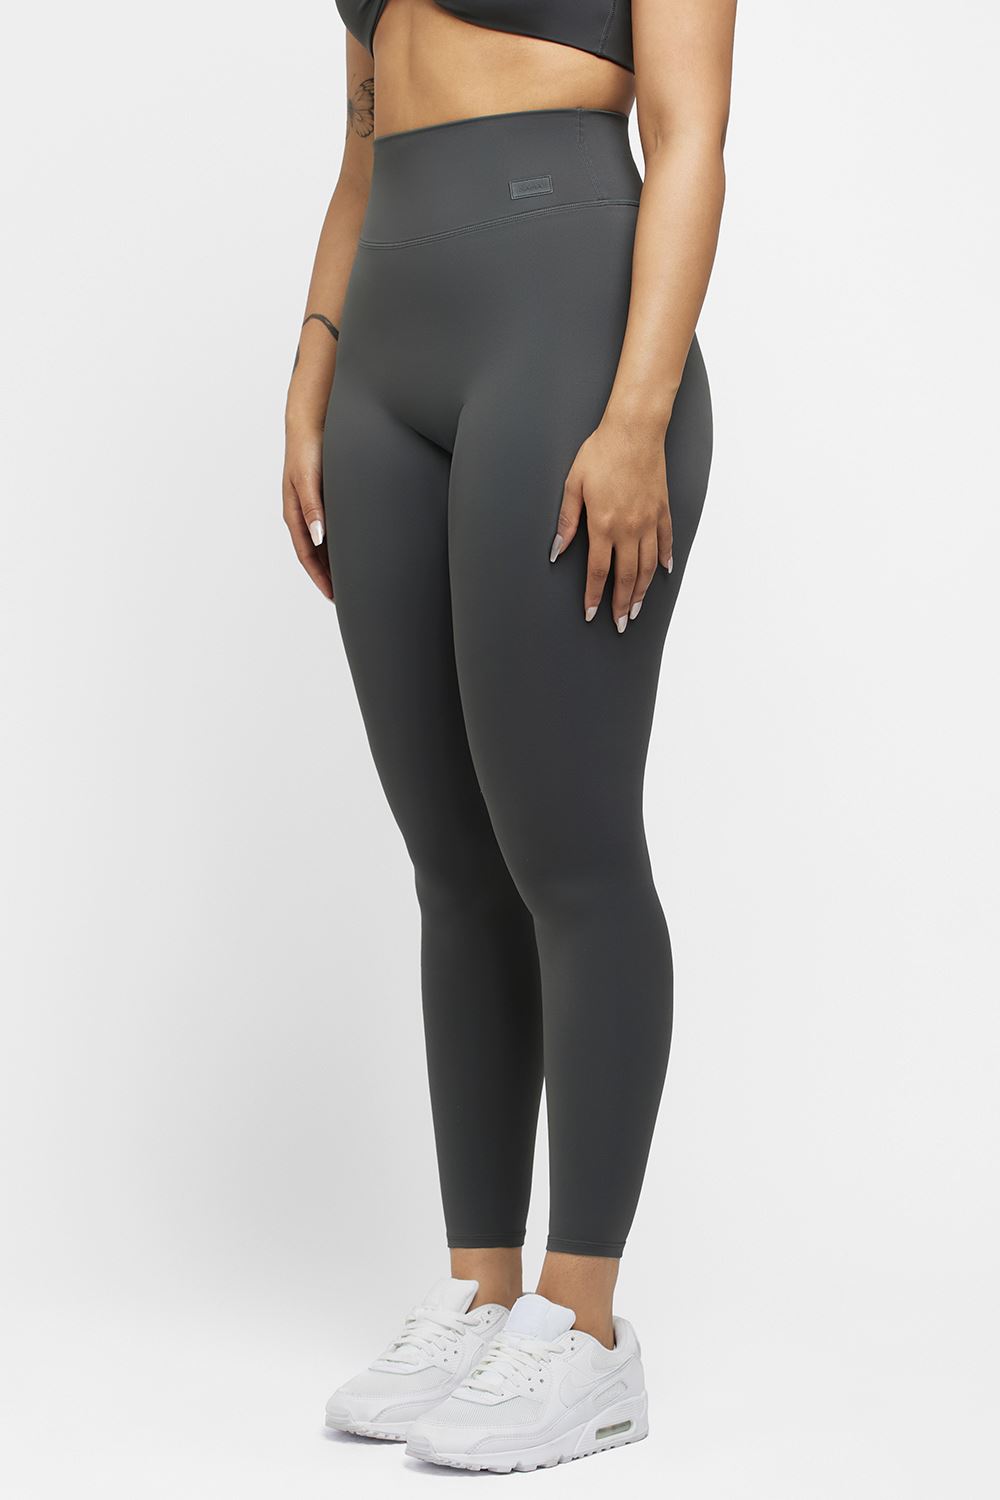 Nike One Women's High-Rise Leggings (Plus Size). Nike ZA